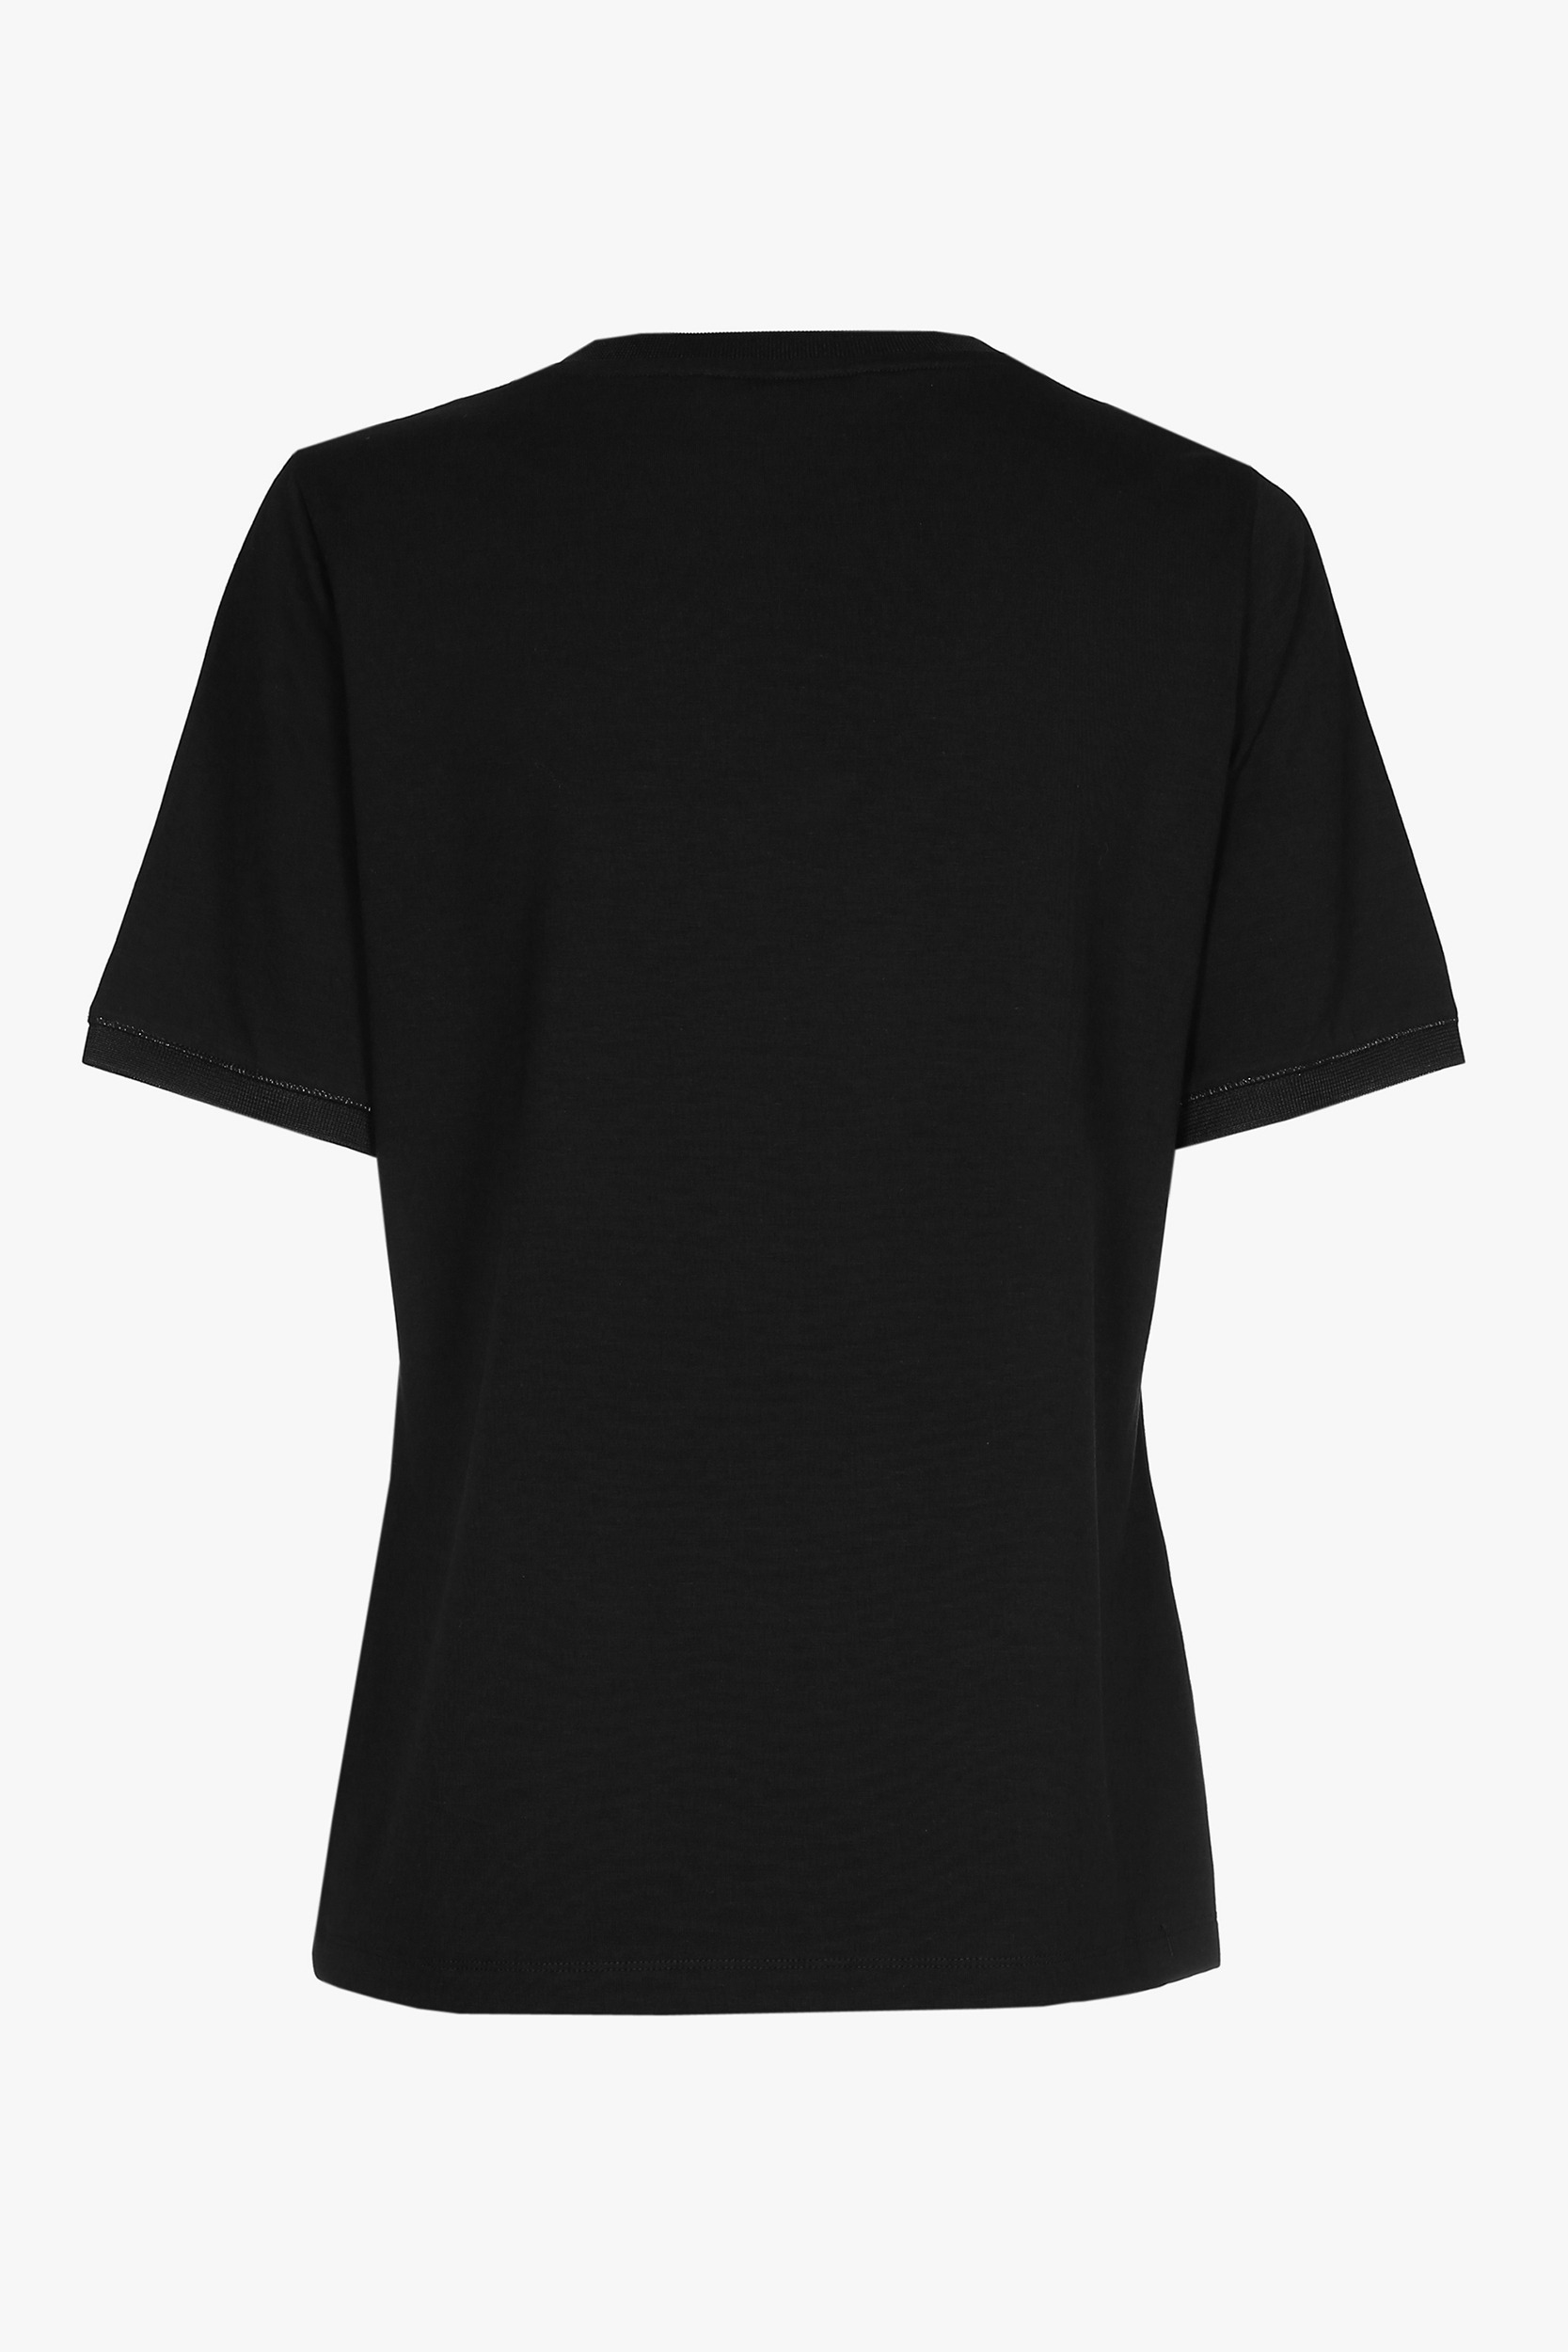 T-shirt noir à manches courtes et col en V.